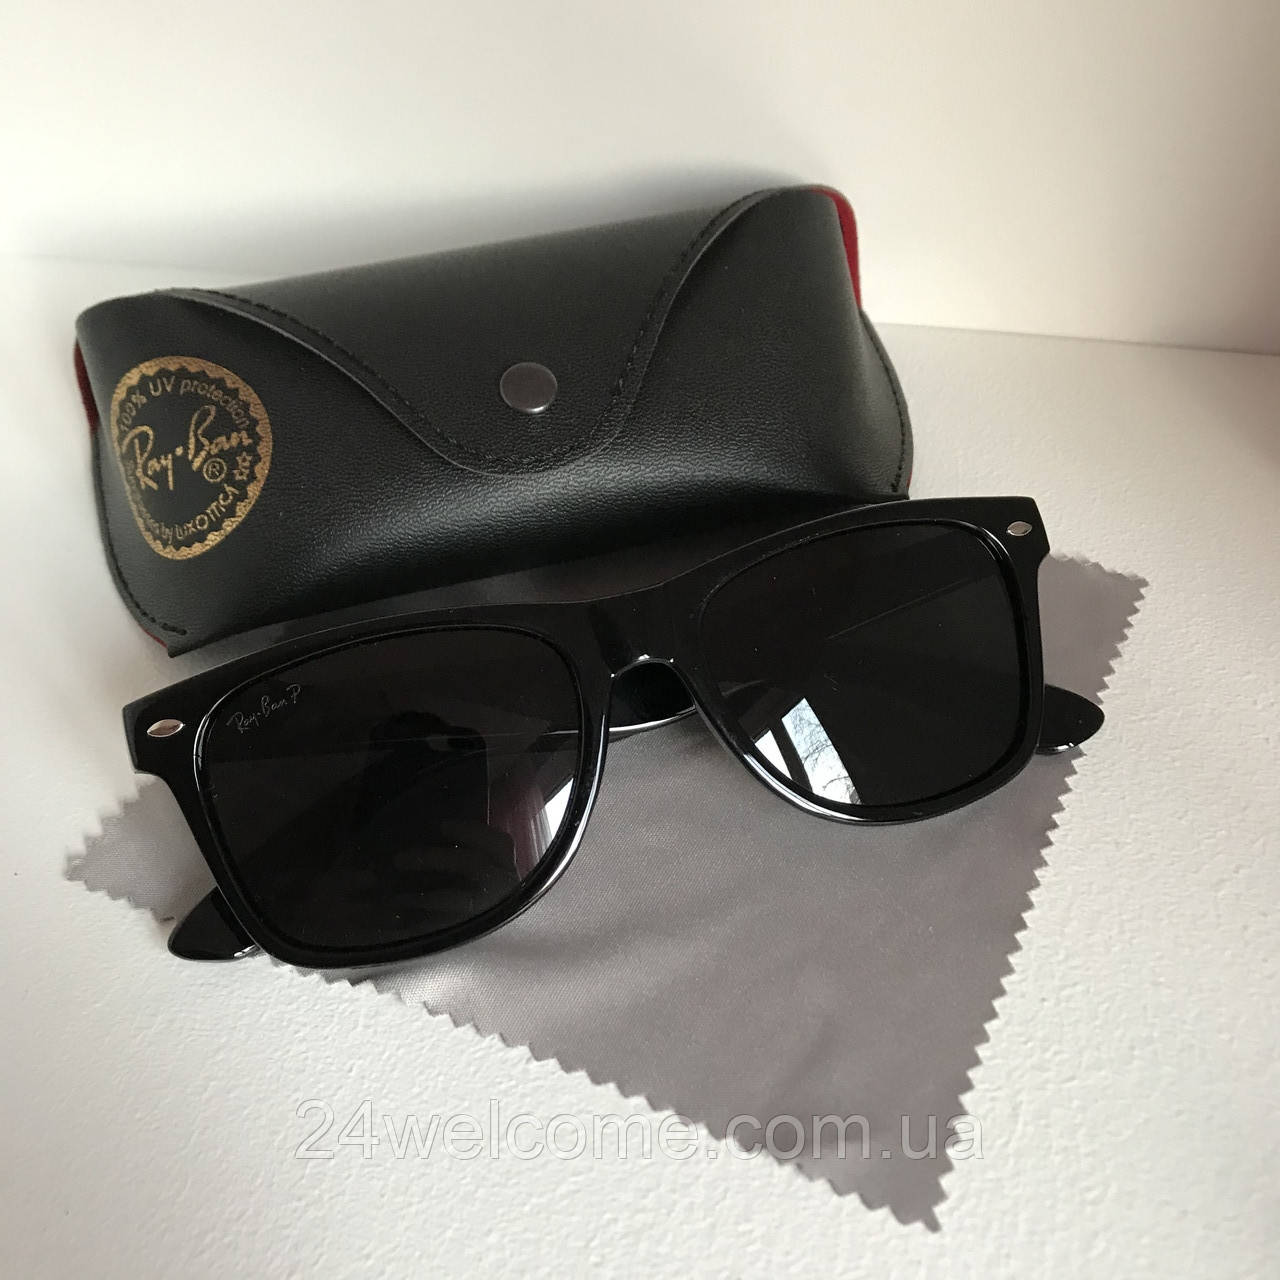 Сонцезахисні окуляри Полароїд Ray Ban Wayfarer чорний глянець комплект